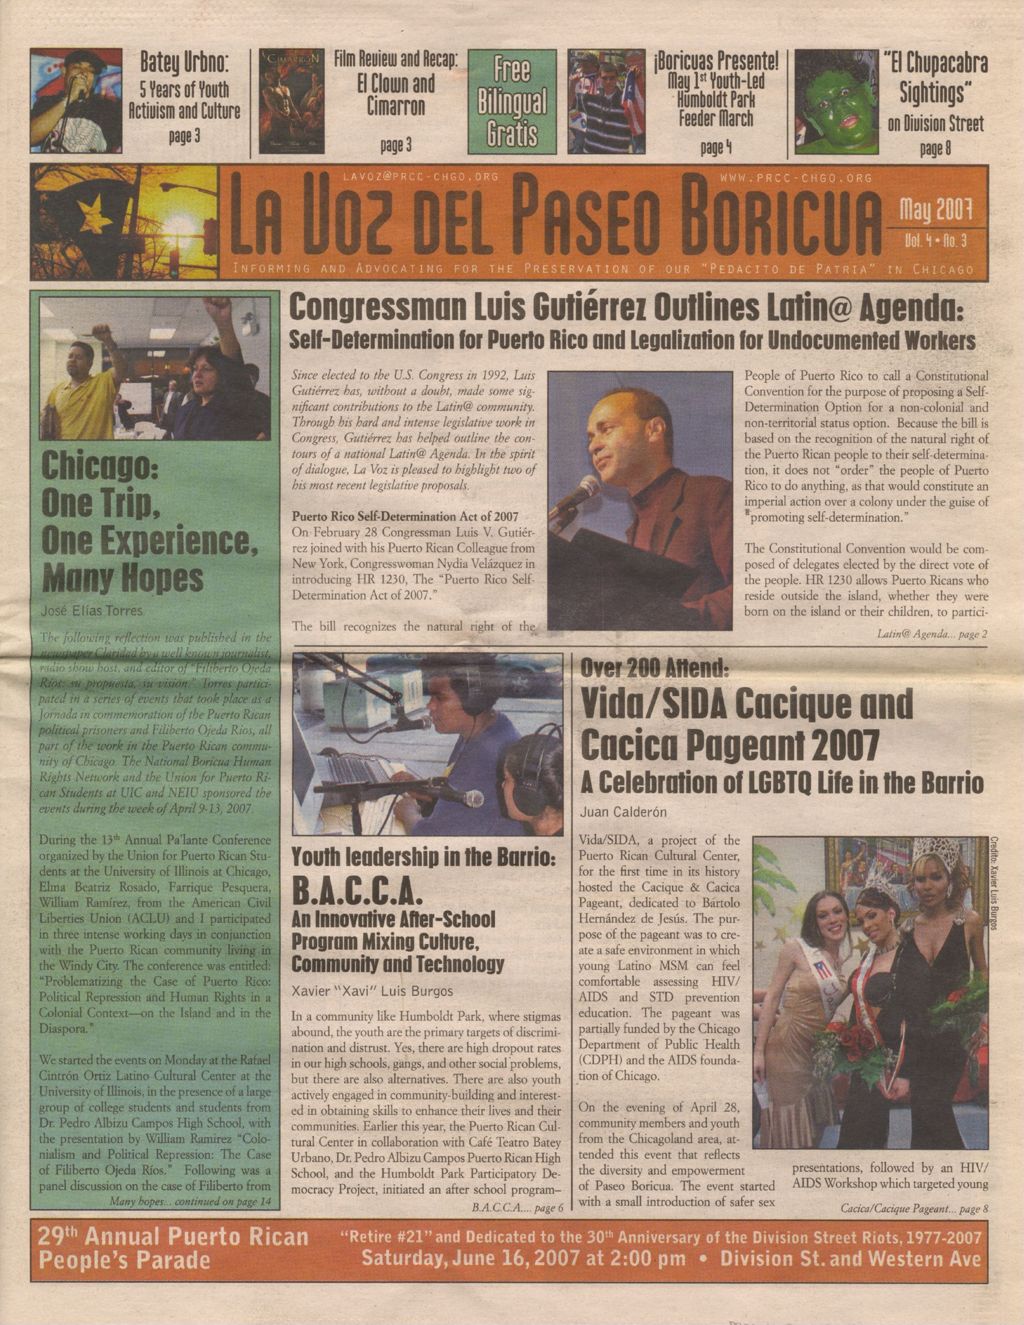 La Voz del Paseo Boricua; May 2007; vol.4, no. 3 (Spanish and English covers)